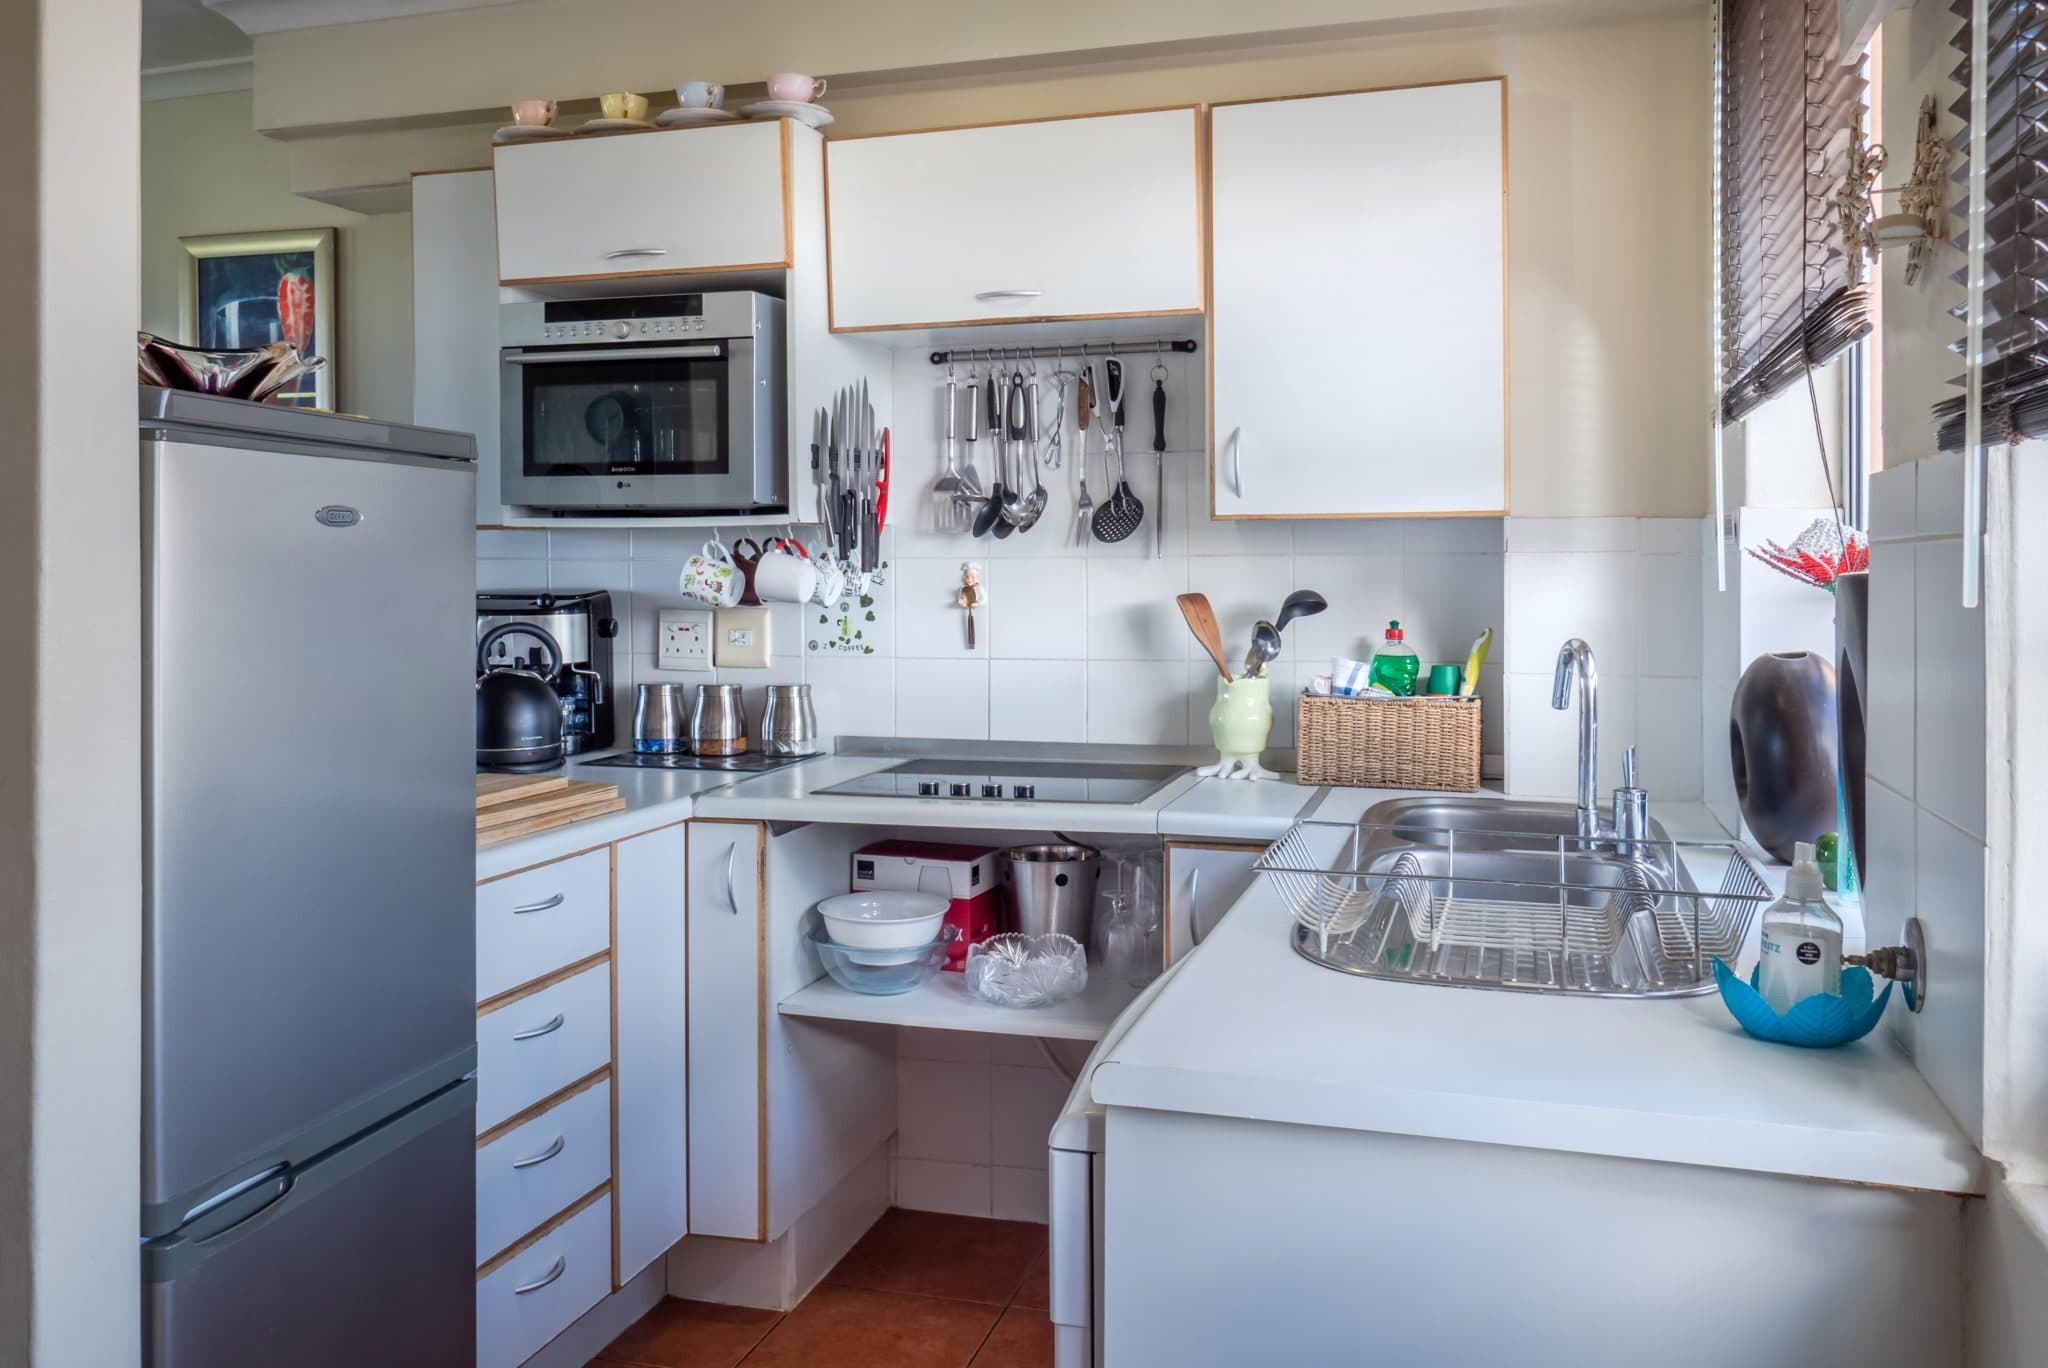 10 small apartment storage ideas to maximize your space – bigos